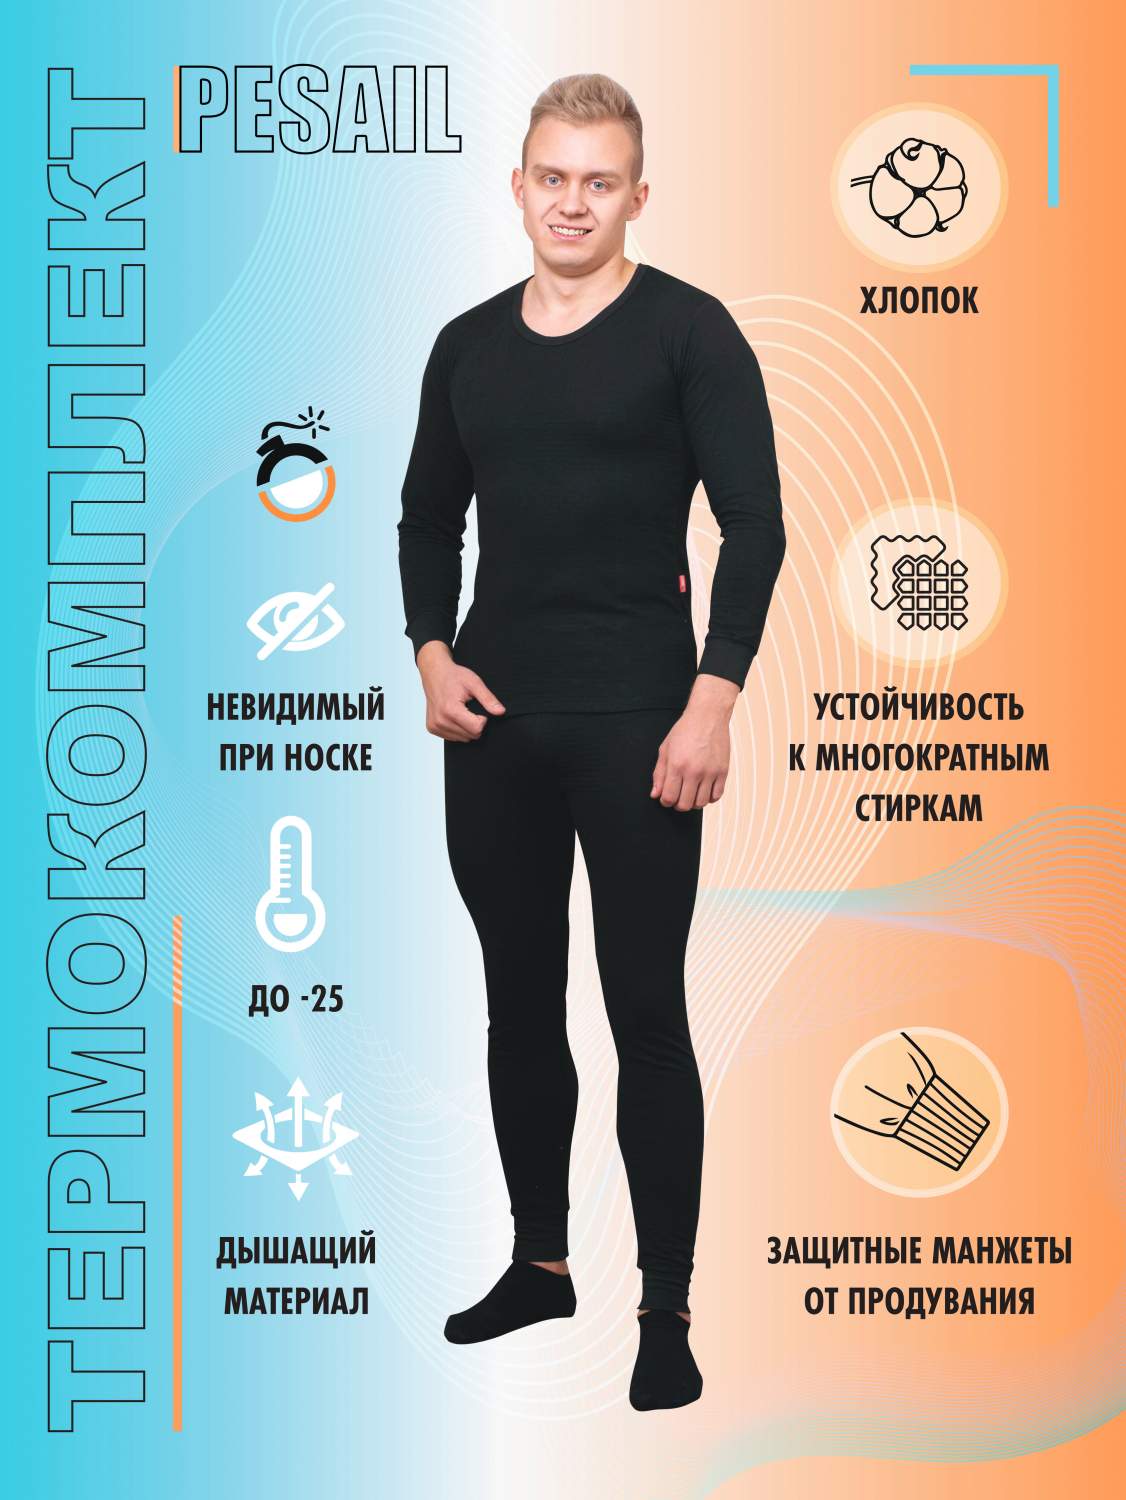 Термобелье Pesail – купить термобелье Pesail в Москве, цены на Мегамаркет